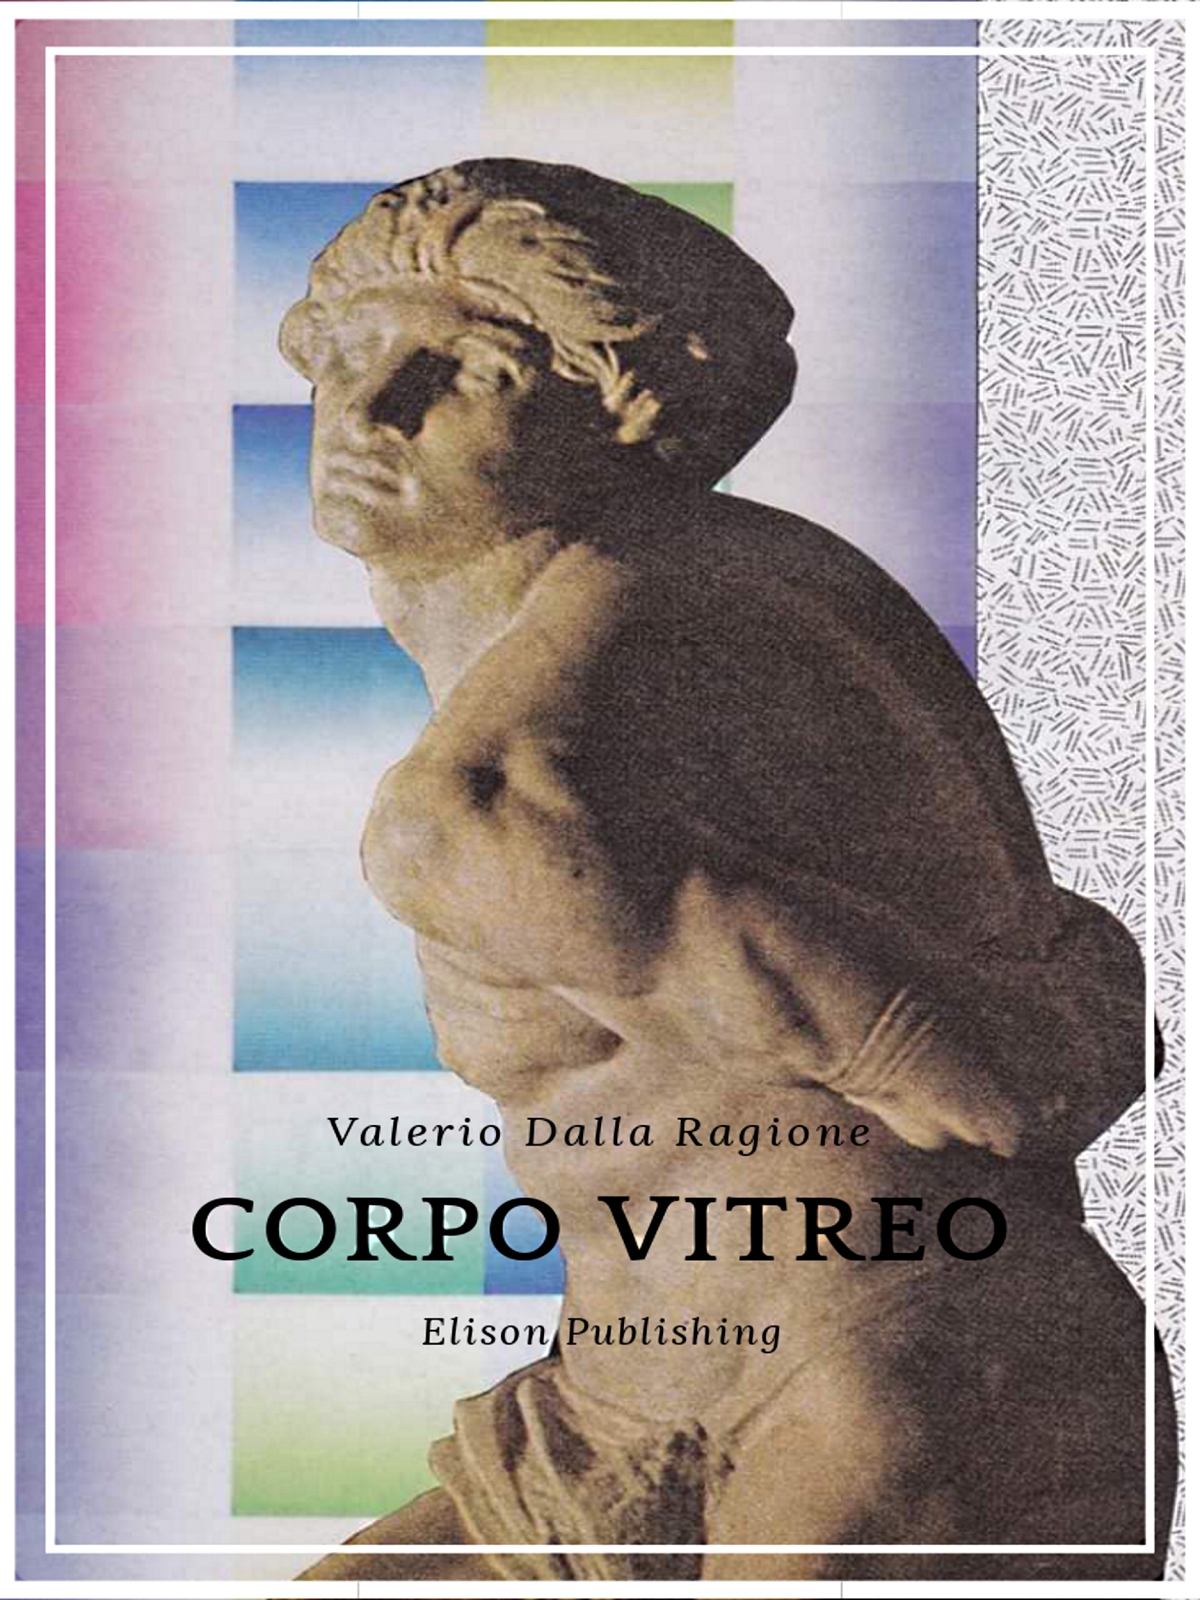 RECENSIONE: “Corpo vitreo” di Valerio Dalla Ragione